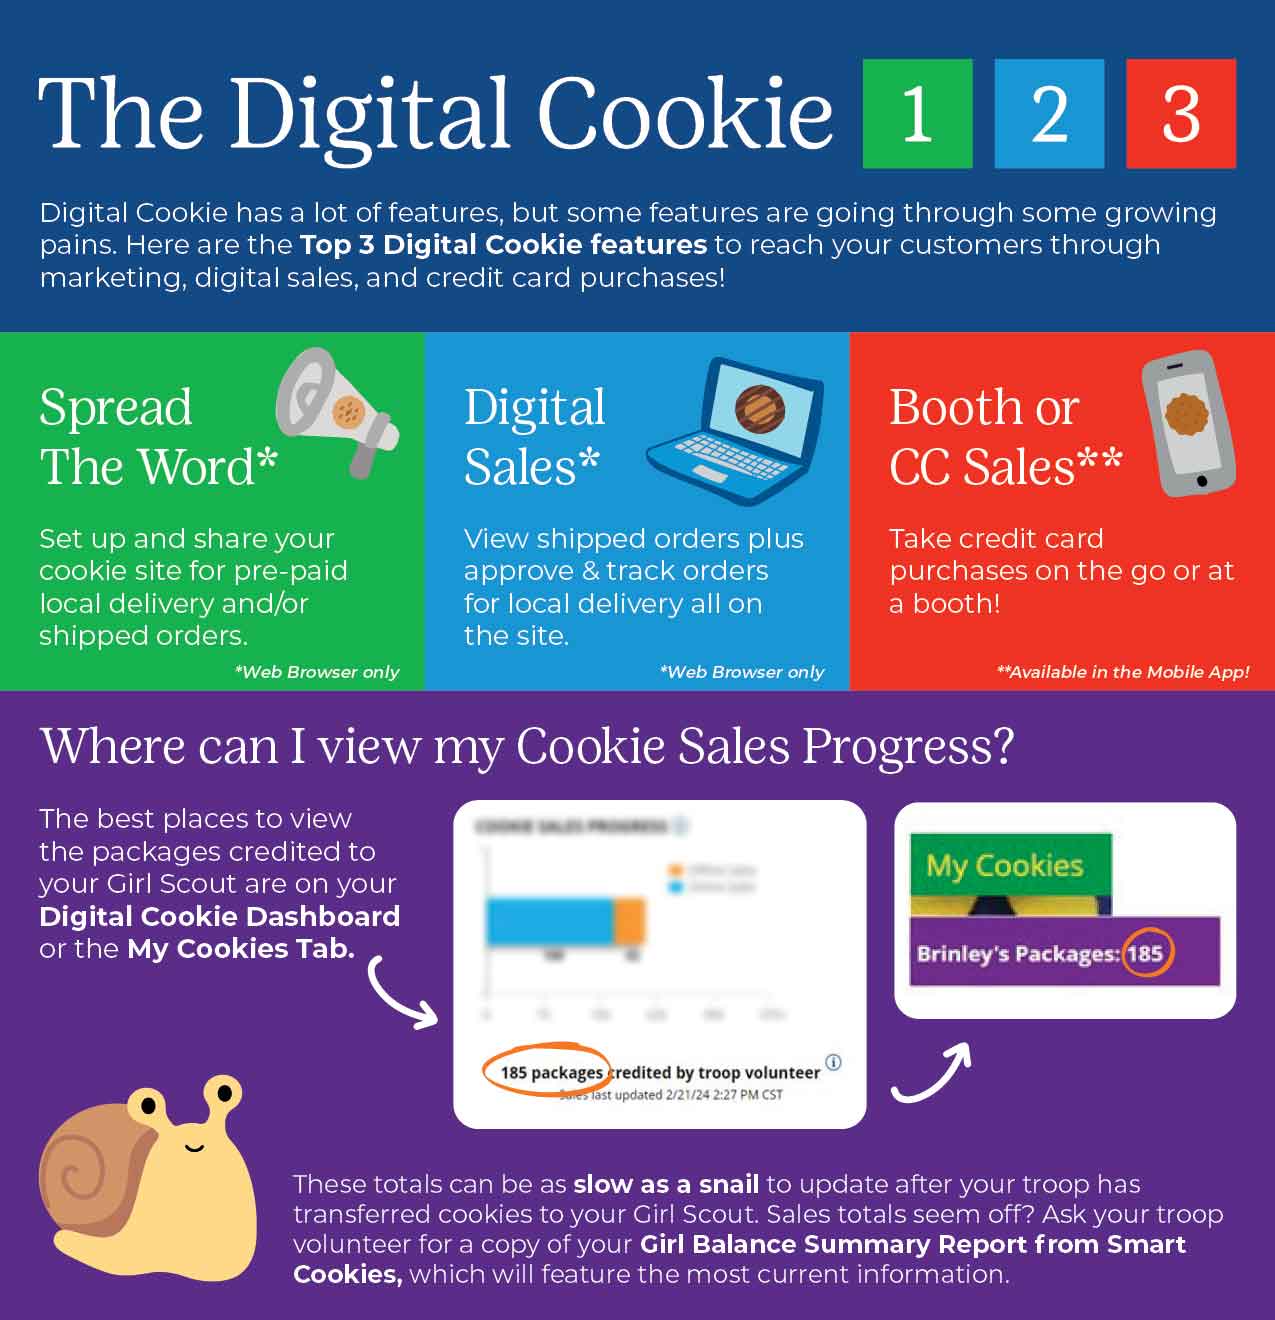 The Digital Cookie 1 2 3 